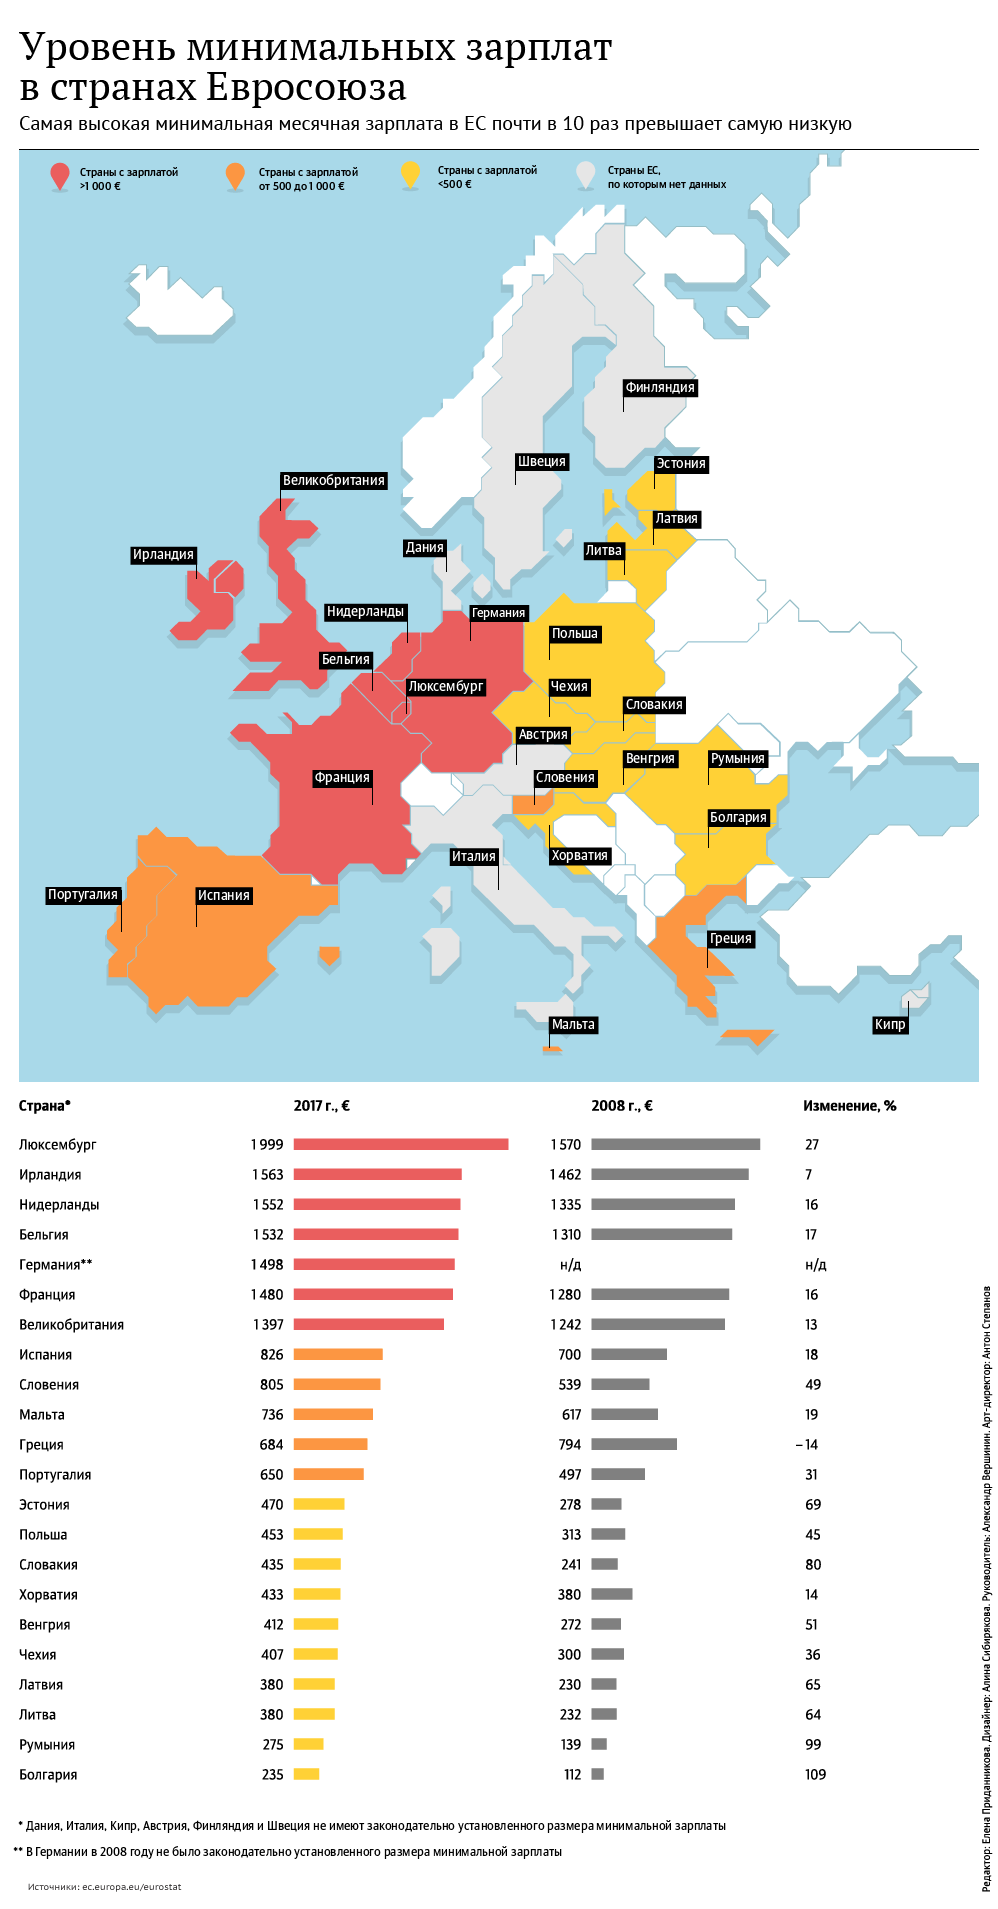 Уровень минимальных зарплат стран Евросоюза